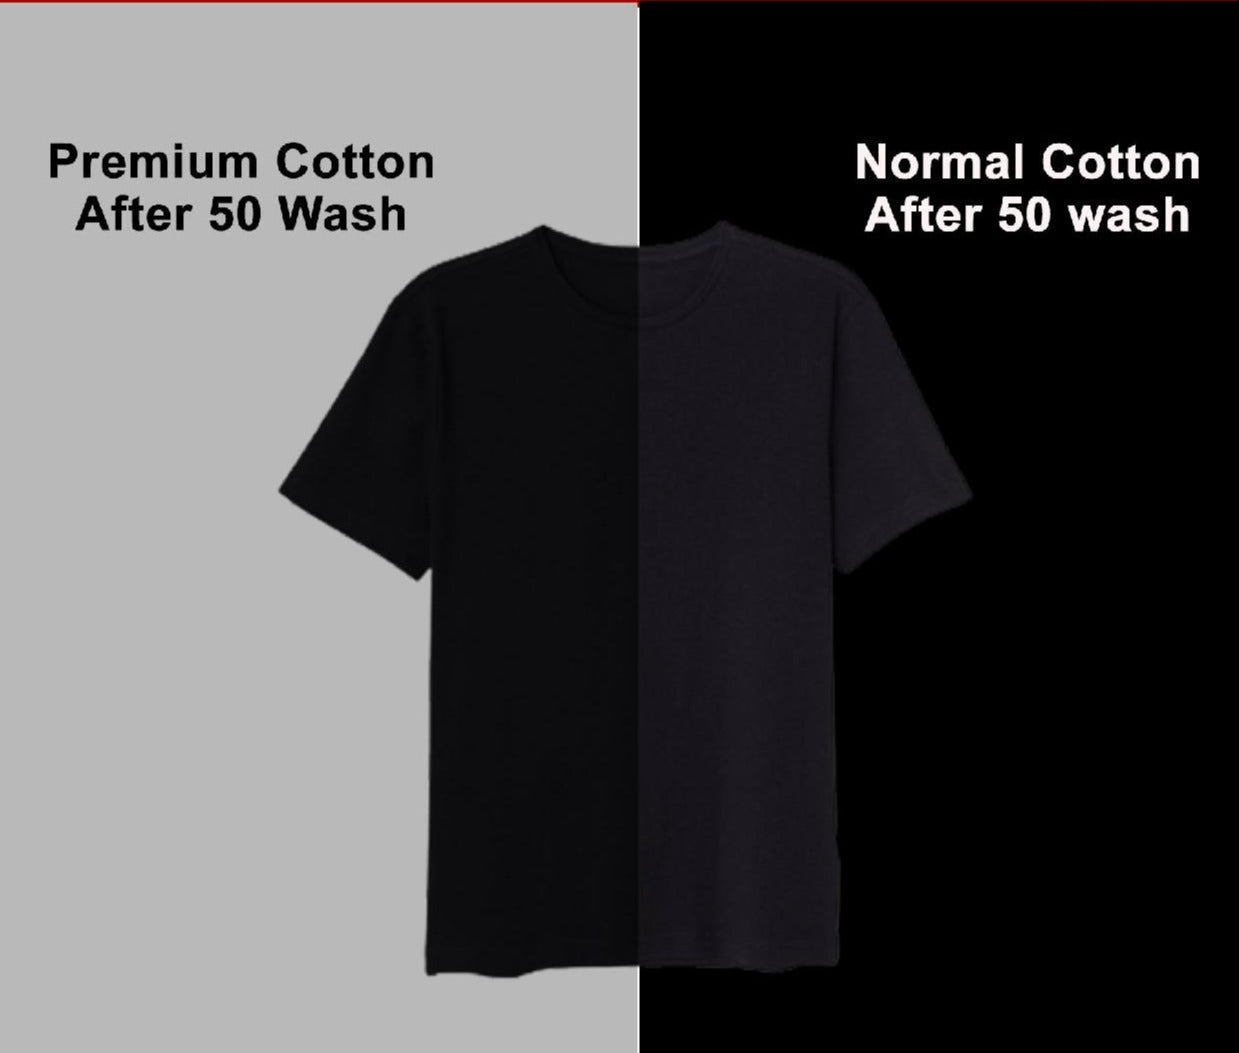 Pocket Design Half Sleeve T-shirt for Men